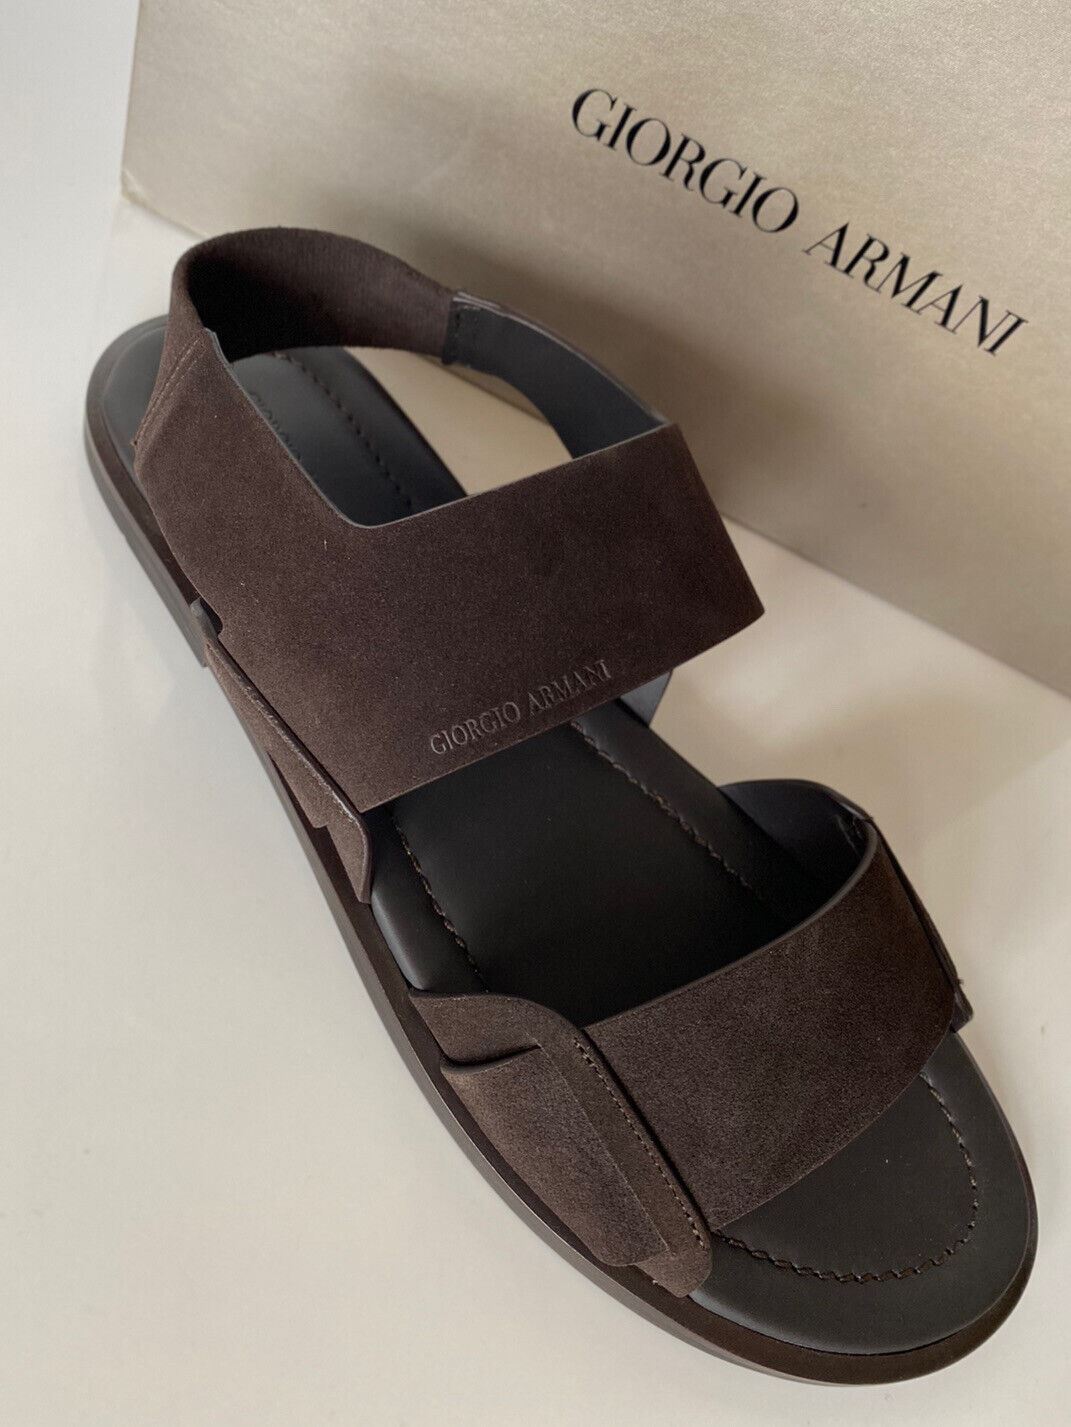 NIB 625 долларов США Giorgio Armani Коричневые замшевые/кожаные сандалии с ремешком на щиколотке 11 US X2P064 IT 